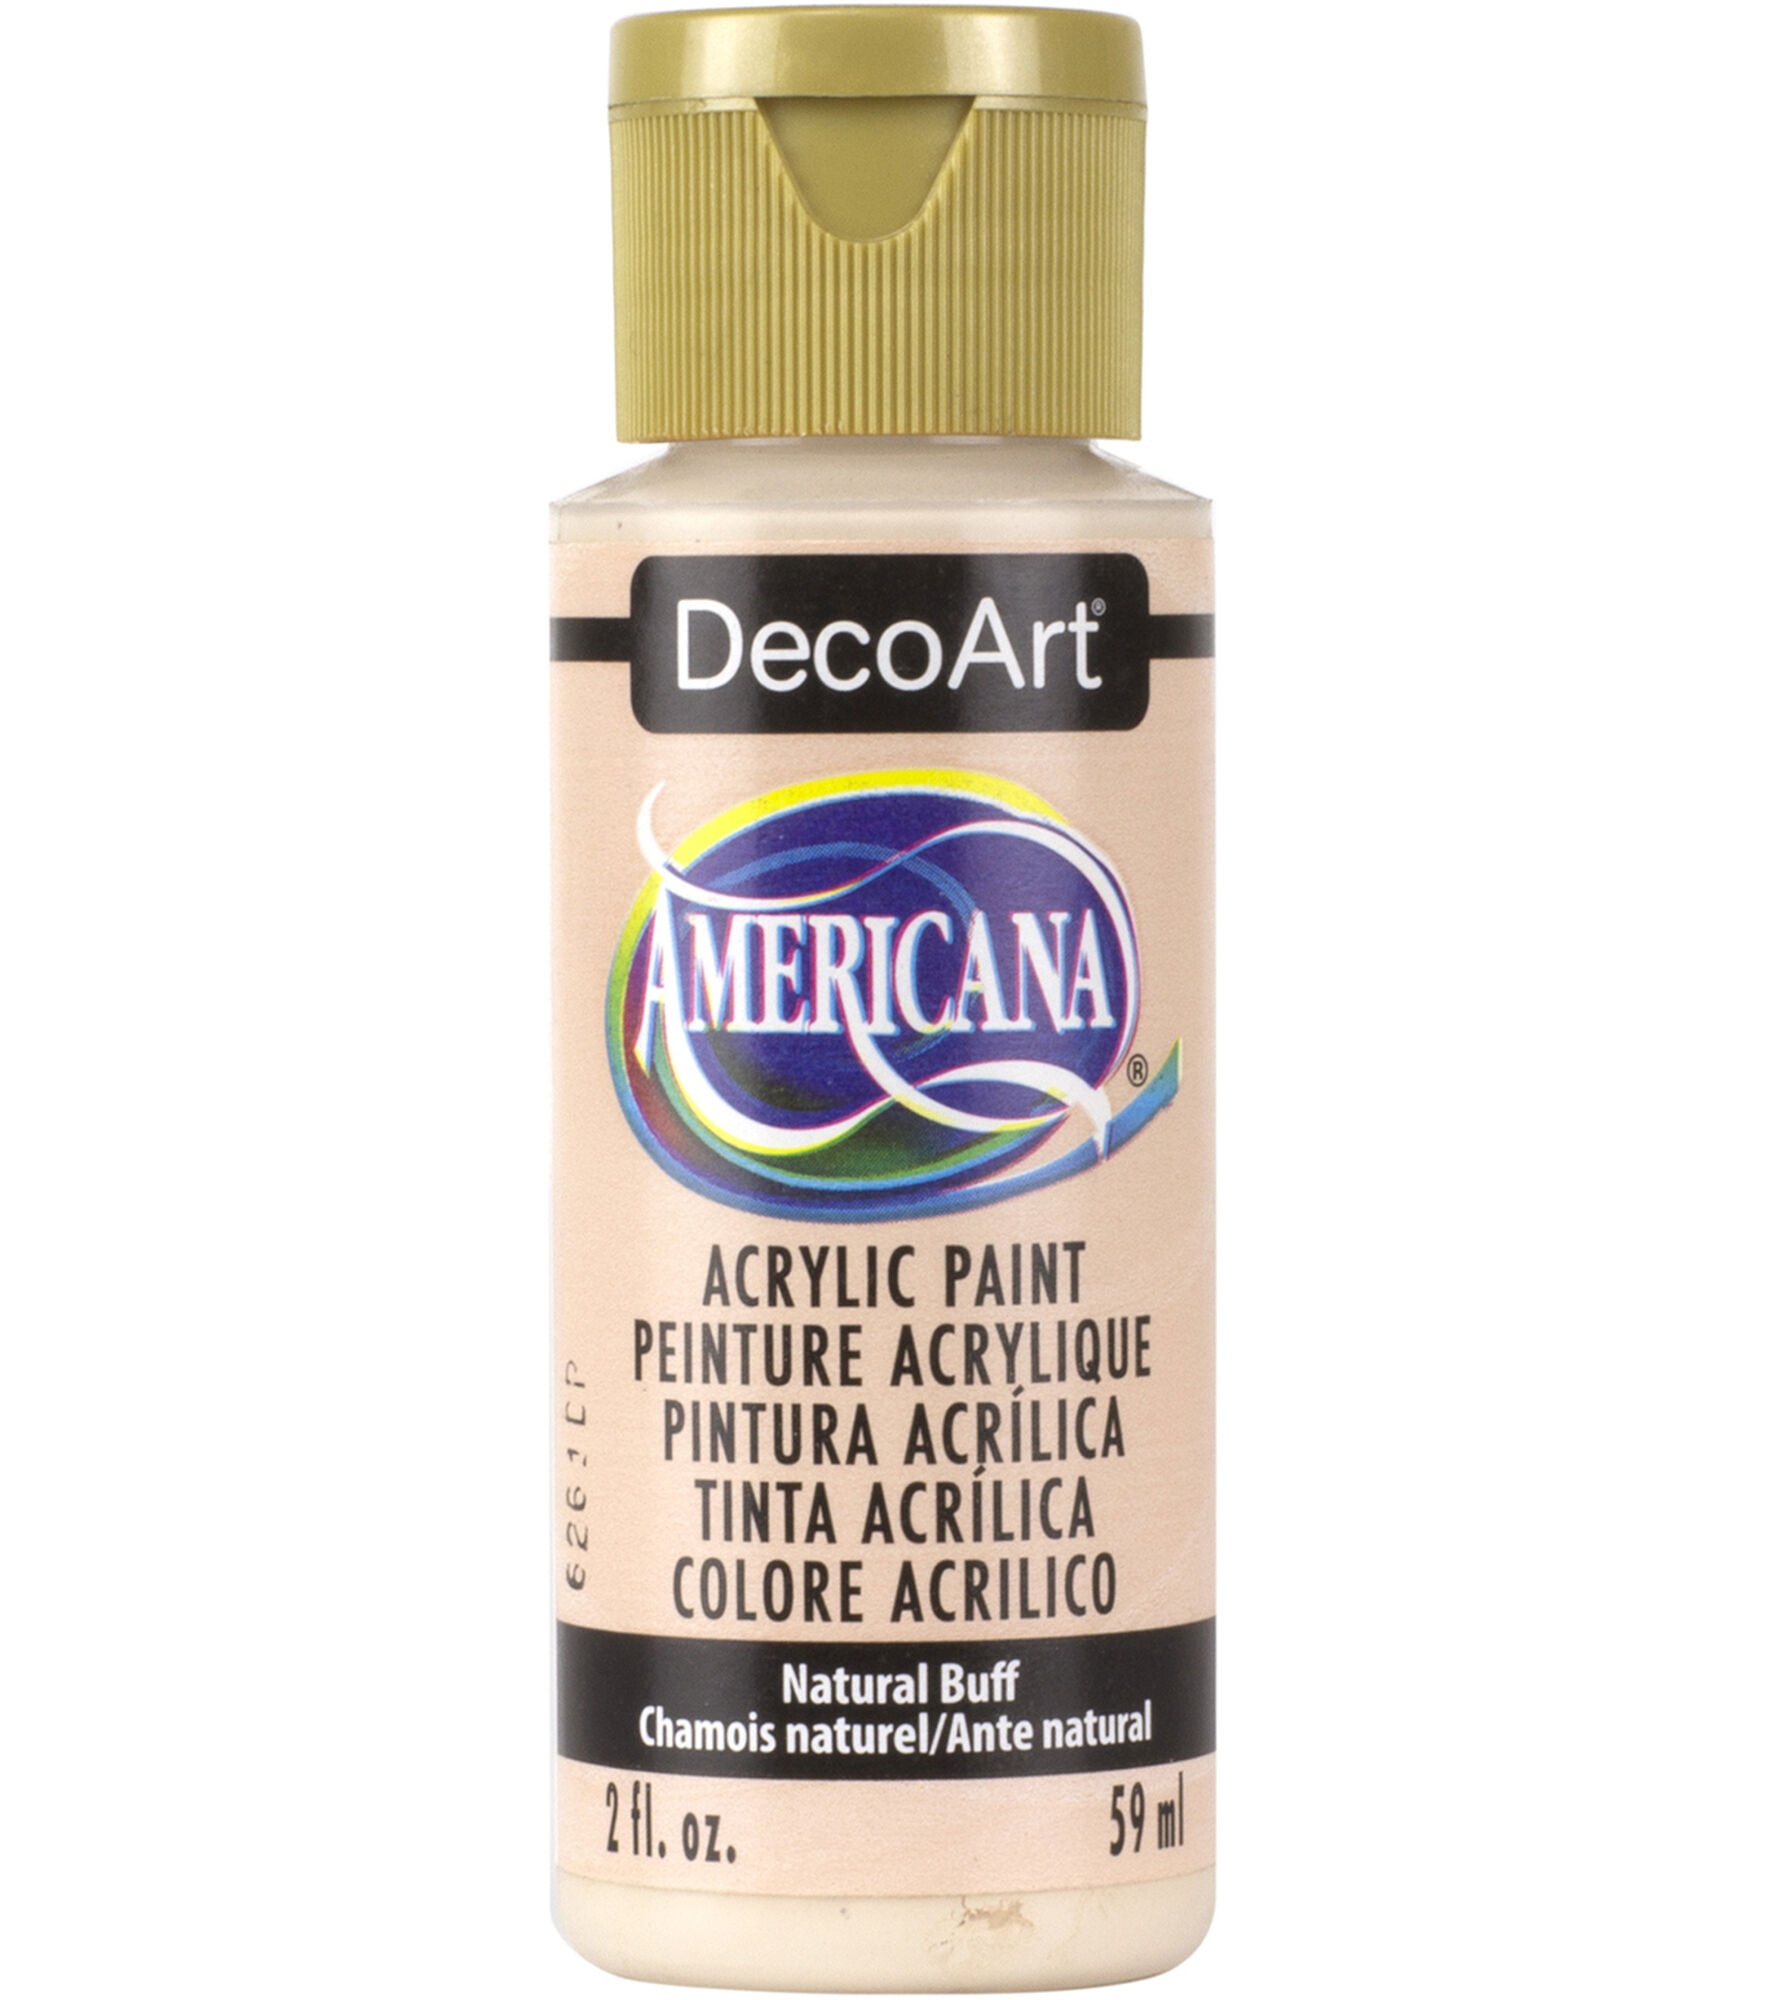 DecoArt Americana Acrylic 2oz Paint, Natural Buff, hi-res